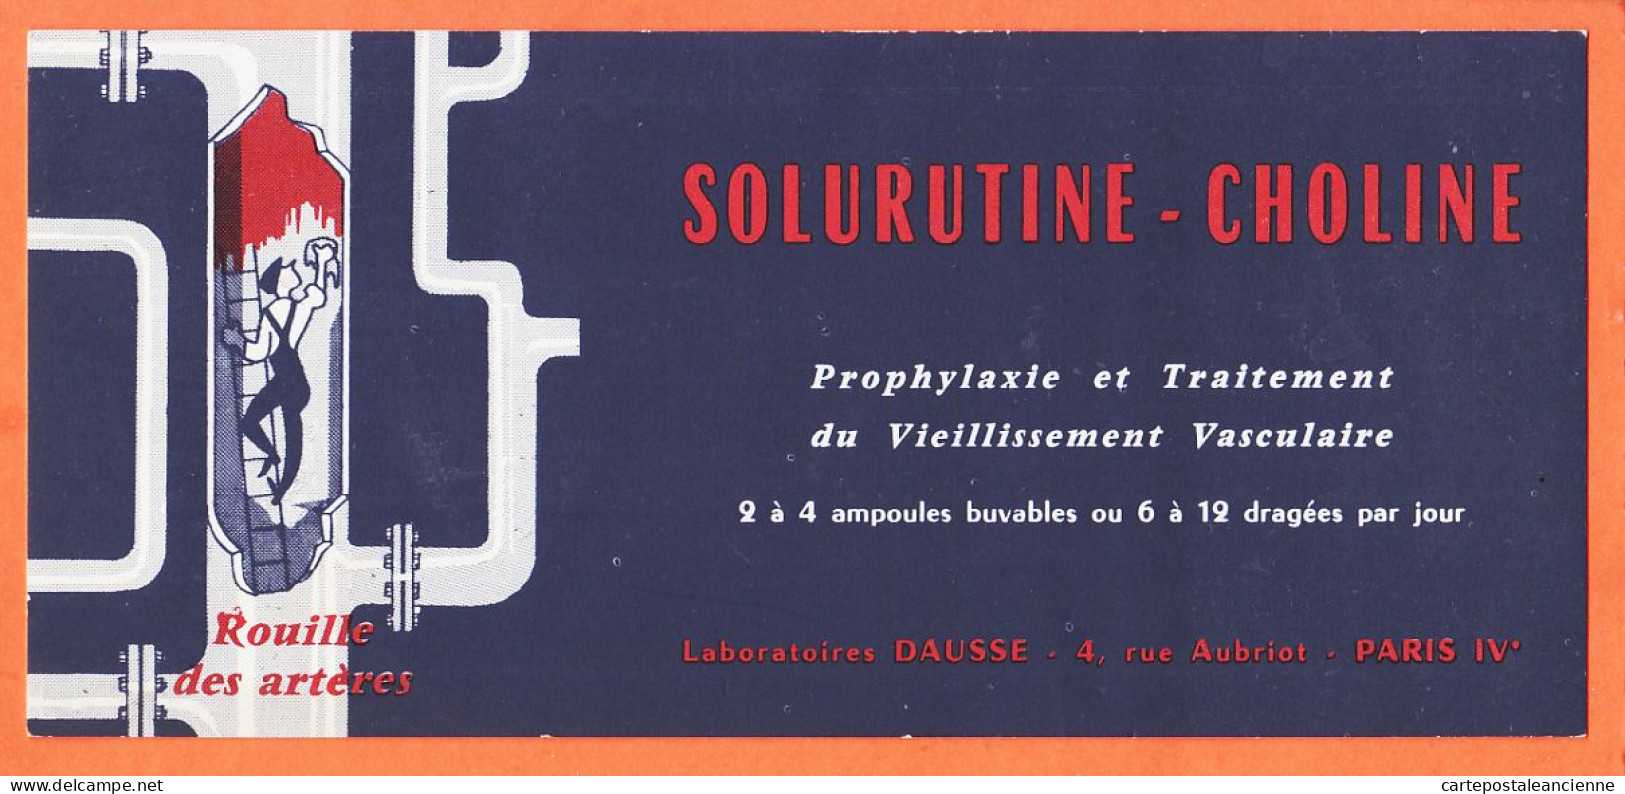 06143 / PARIS IV Laboratoire DAUSSE 4 Rue AUBRIOT Prophylaxie Traitement Vieillissement SOLURUTINE-CHOLINE Buvard - Drogerie & Apotheke